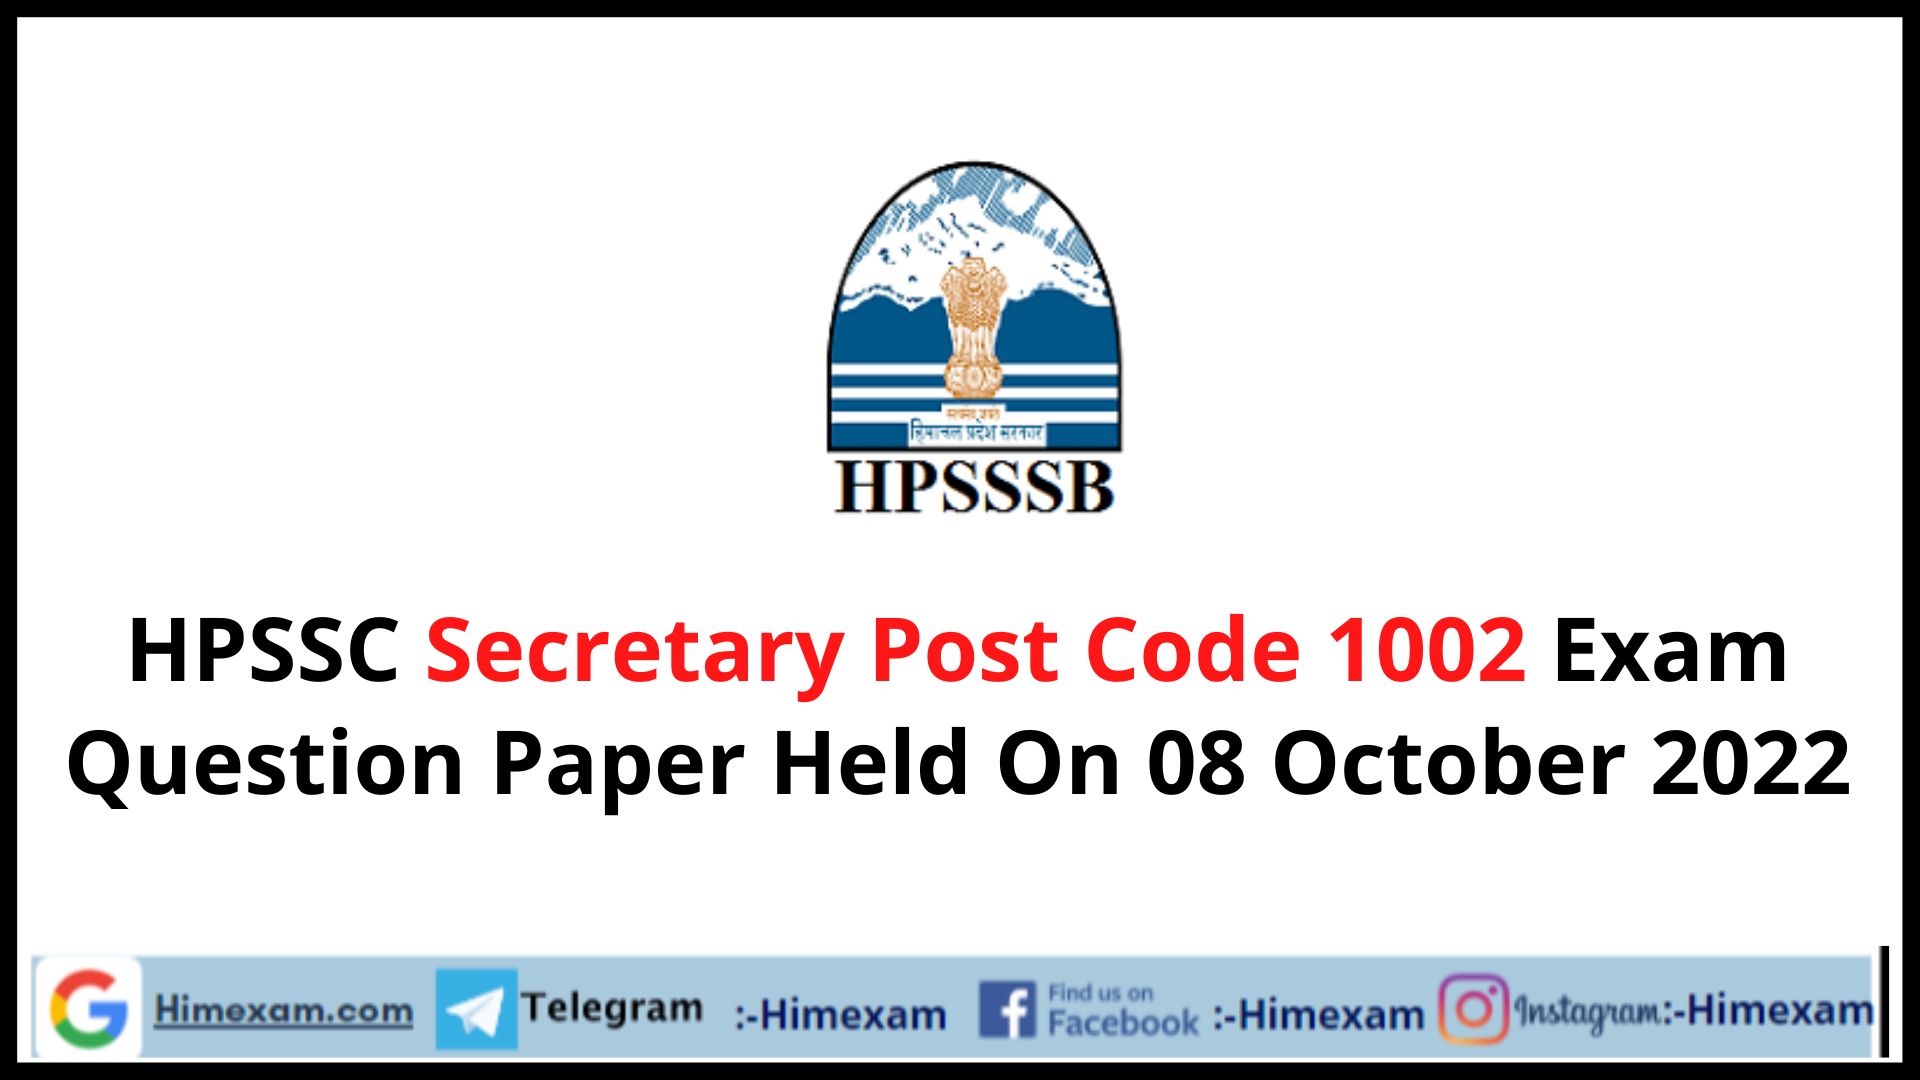 HPSSC Secretary Post Code 1002 Exam Question Paper Held On 08 October 2022